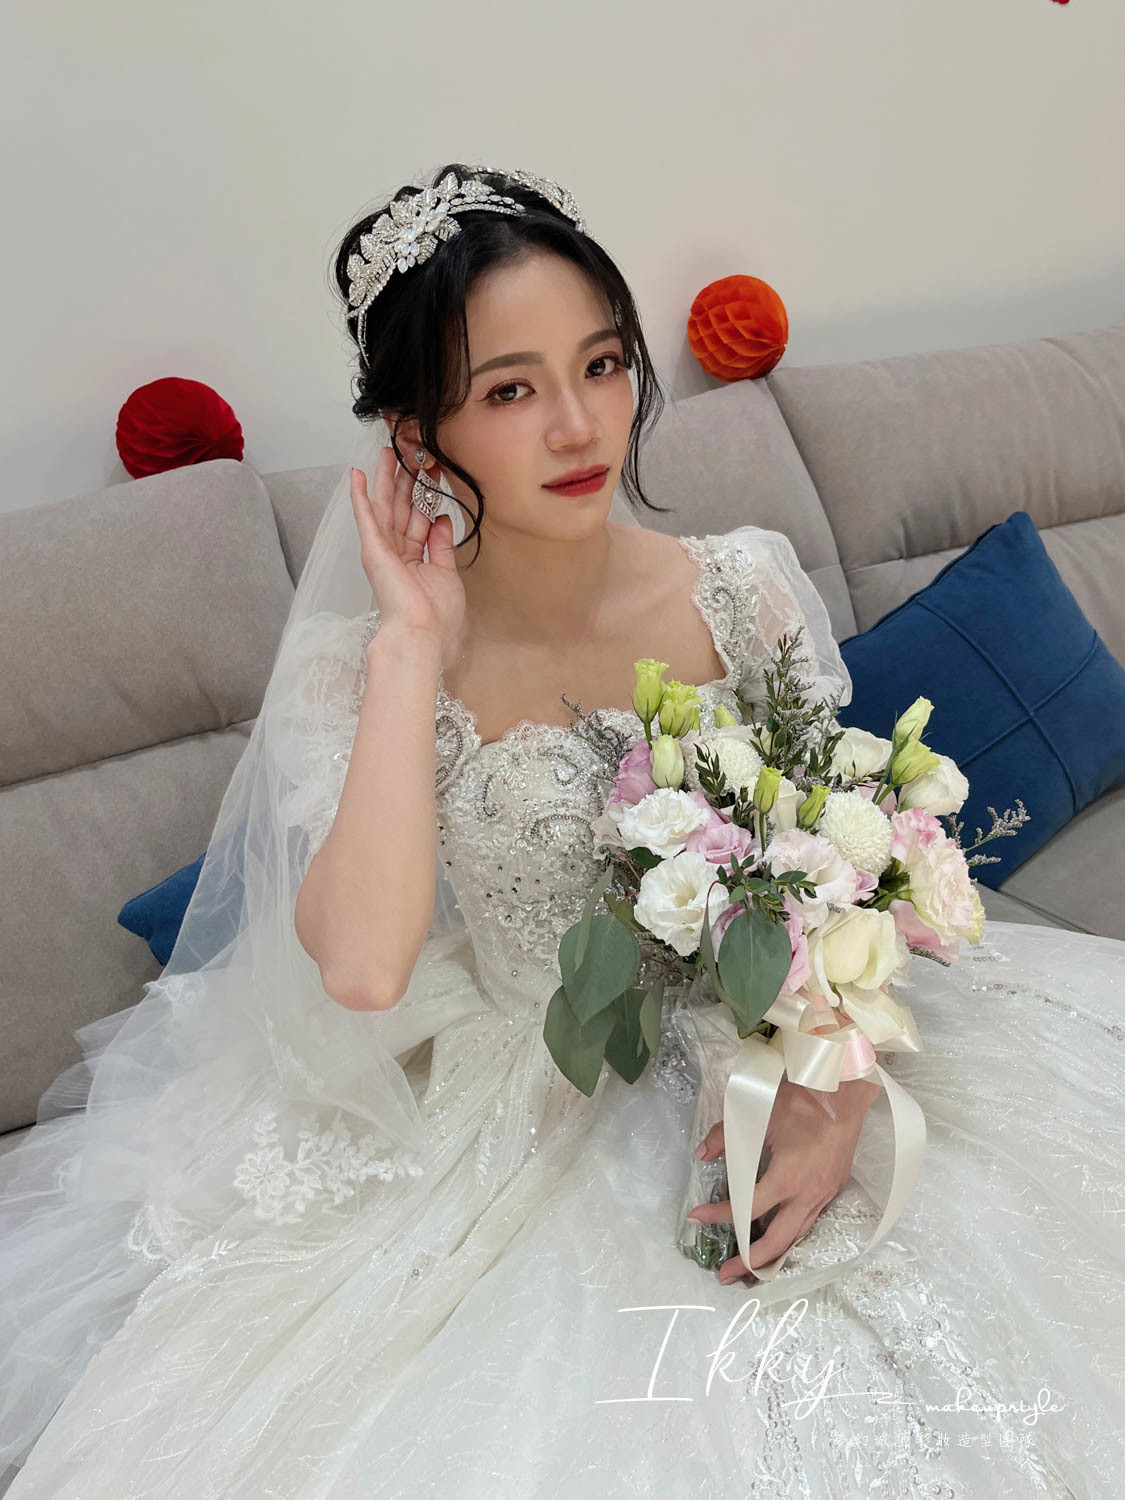 【新秘Ikky】bride煜楨 結婚造型 / 日系仙女風